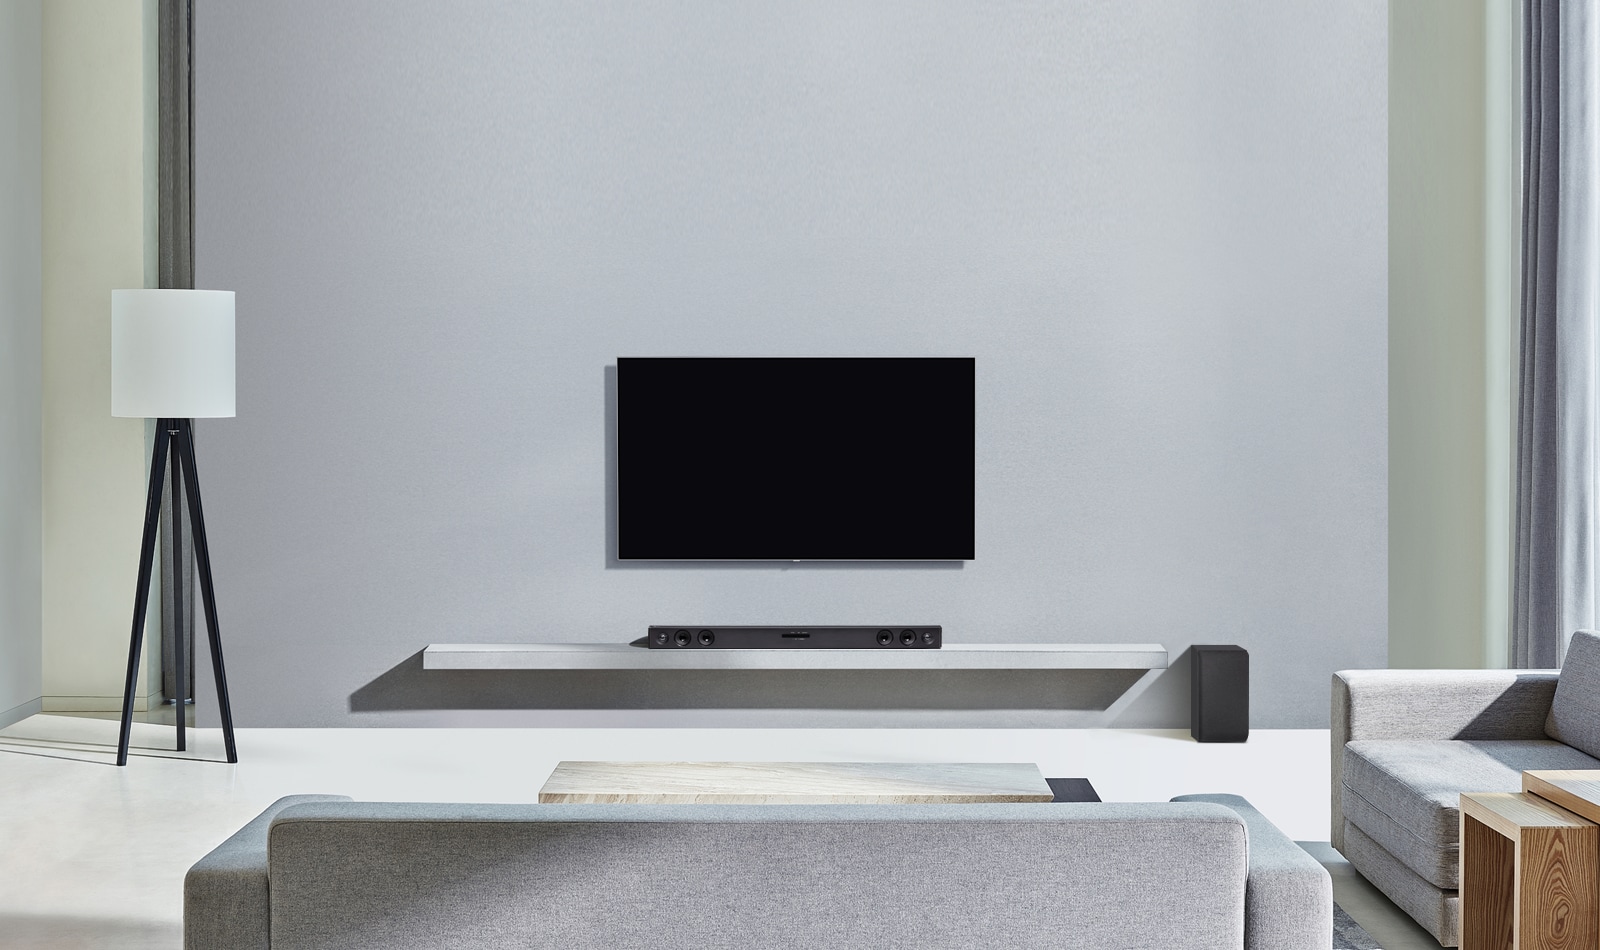 El televisor LG está colgado en la pared gris. Y la barra de sonido LG SQC2 está colocada en la estantería del salón. Y el subwoofer está colocado junto a la estantería. La imagen ilustra que la barra de sonido hace juego con el televisor LG y complementa la estancia.